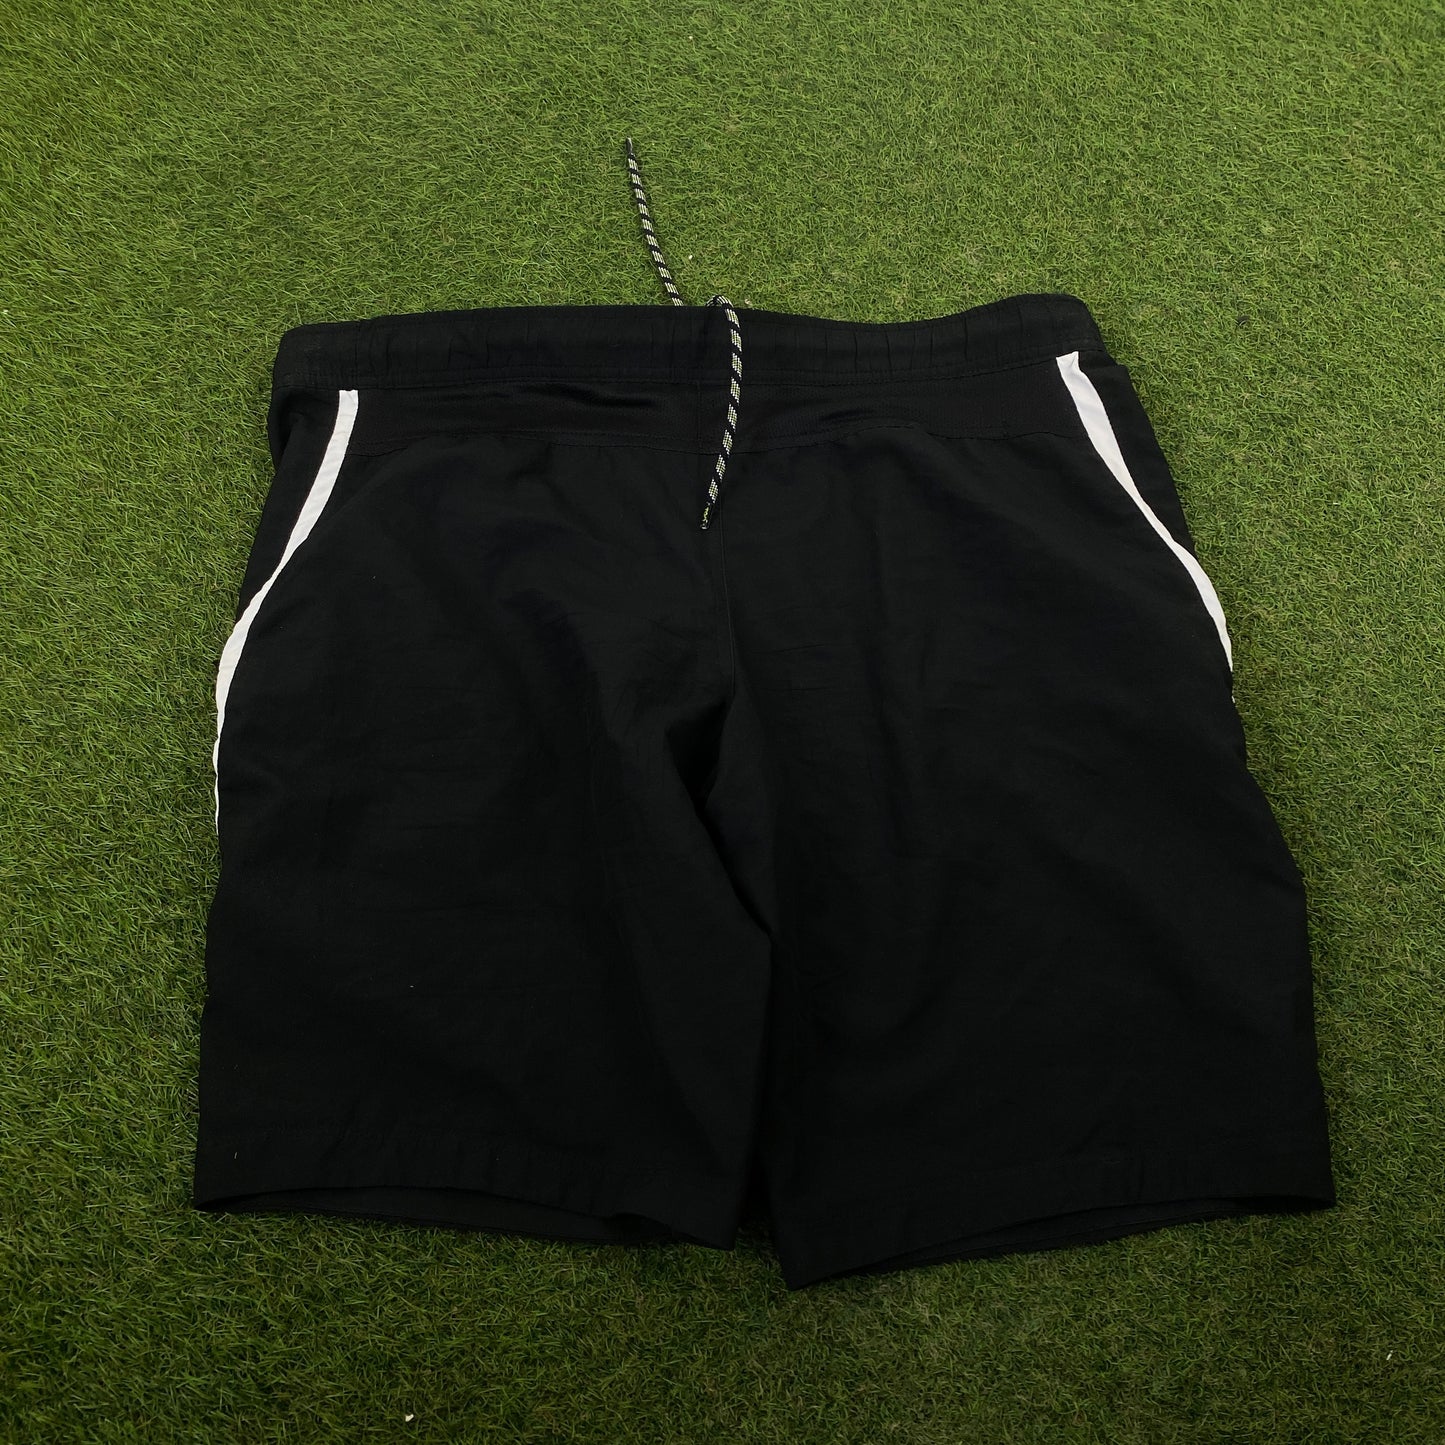 00s Nike T90 Football Shorts Black Large